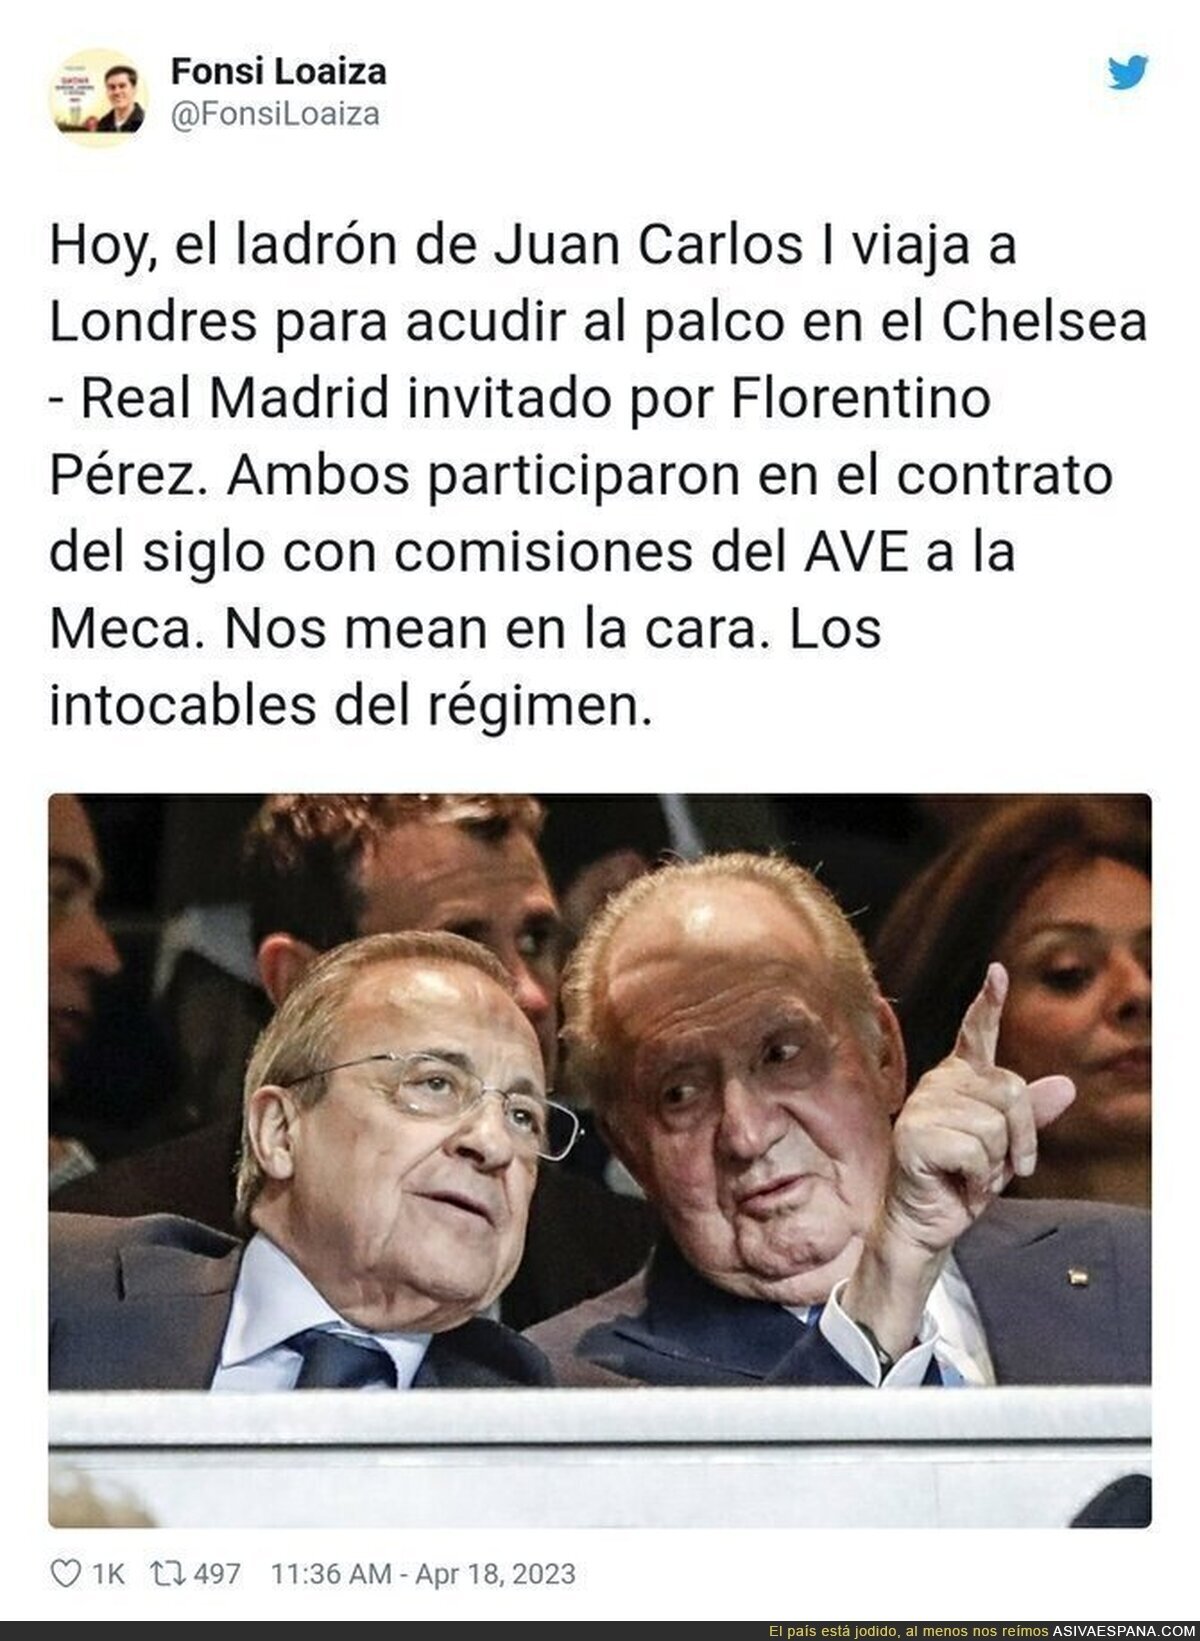 La amistad de Florentino con el Rey Juan Carlos